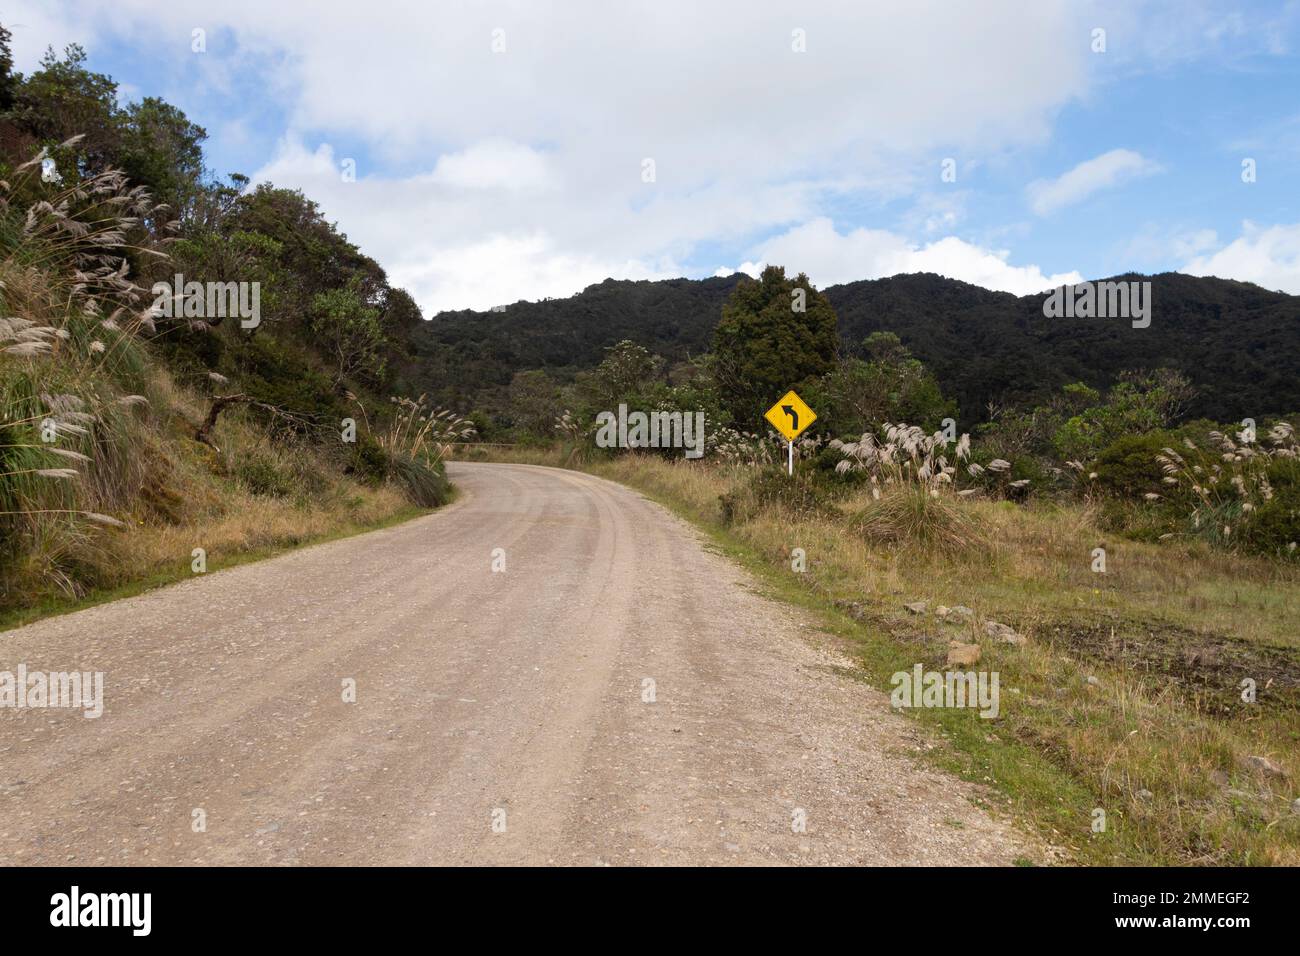 CHINGAZA, COLOMBIA - campagna strada di sabbia con segnale di traffico a sinistra nel mezzo del parco nazionale colombiano chingaza Foto Stock